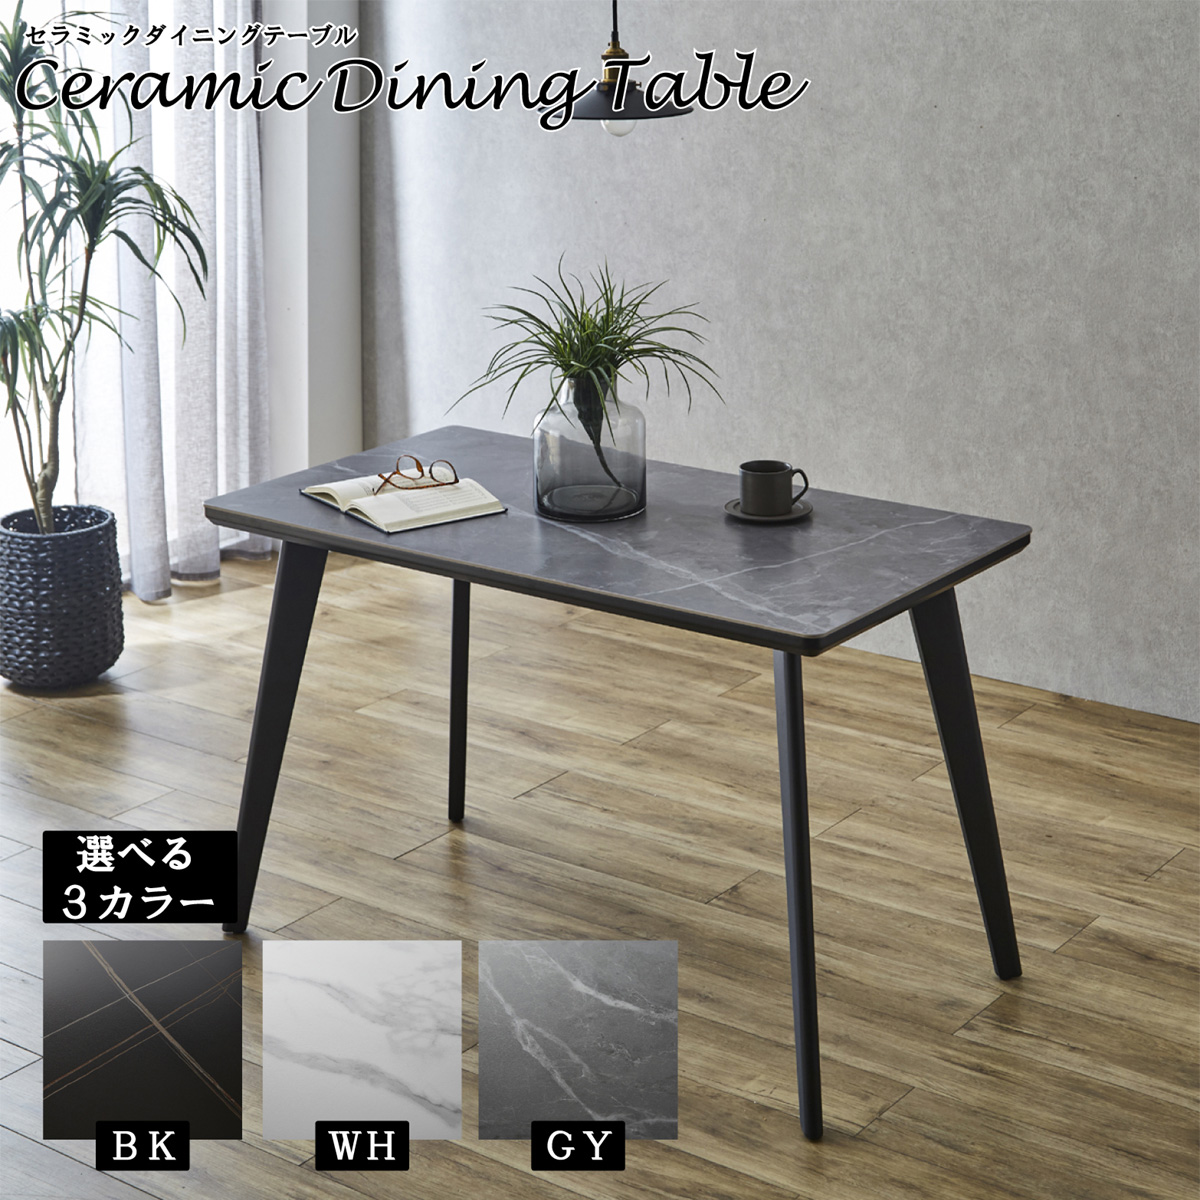 モダンなデザイン性と耐久性を備えた130cm4本脚セラミックダイニングテーブル！